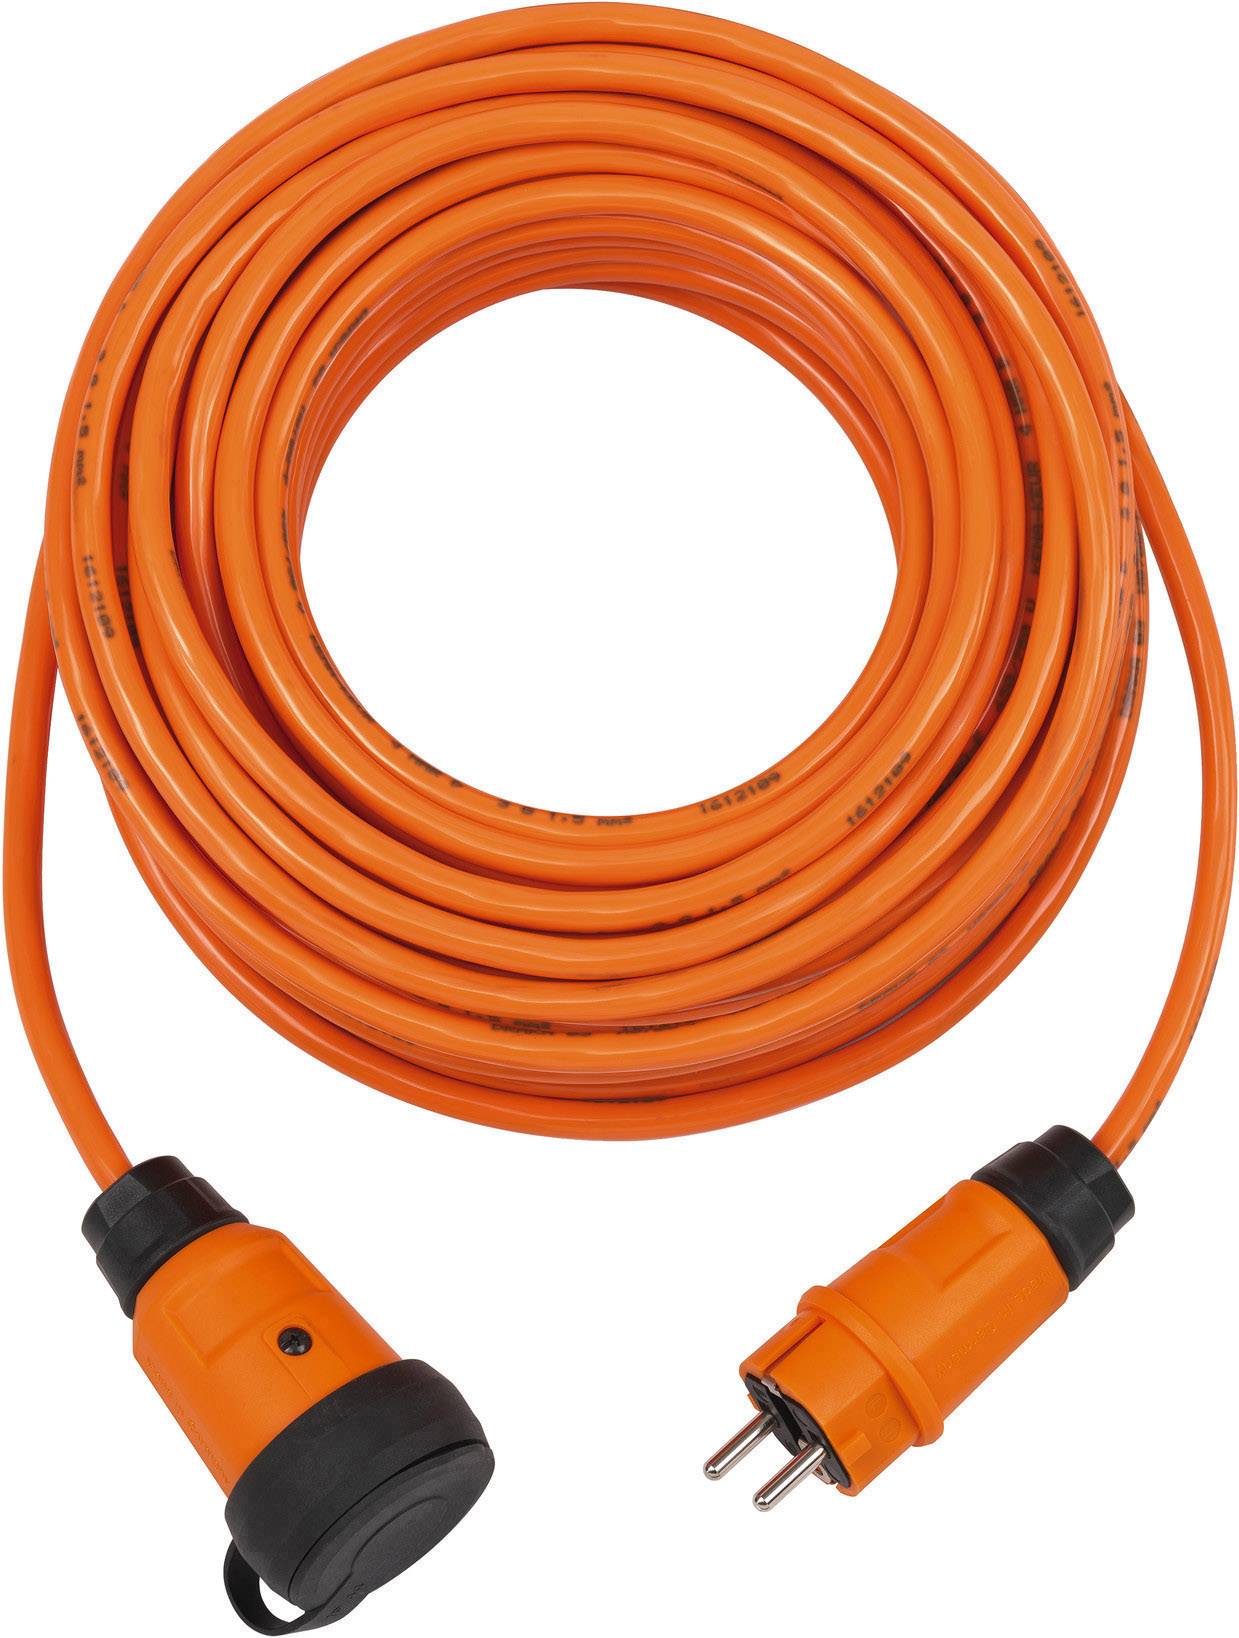 Brennenstuhl professionalLINE Strom mm² Orange H07BQ-F 16 3G Grau, 2,5 m 9162250200 Verlängerungskabel A 25.00 kaufen